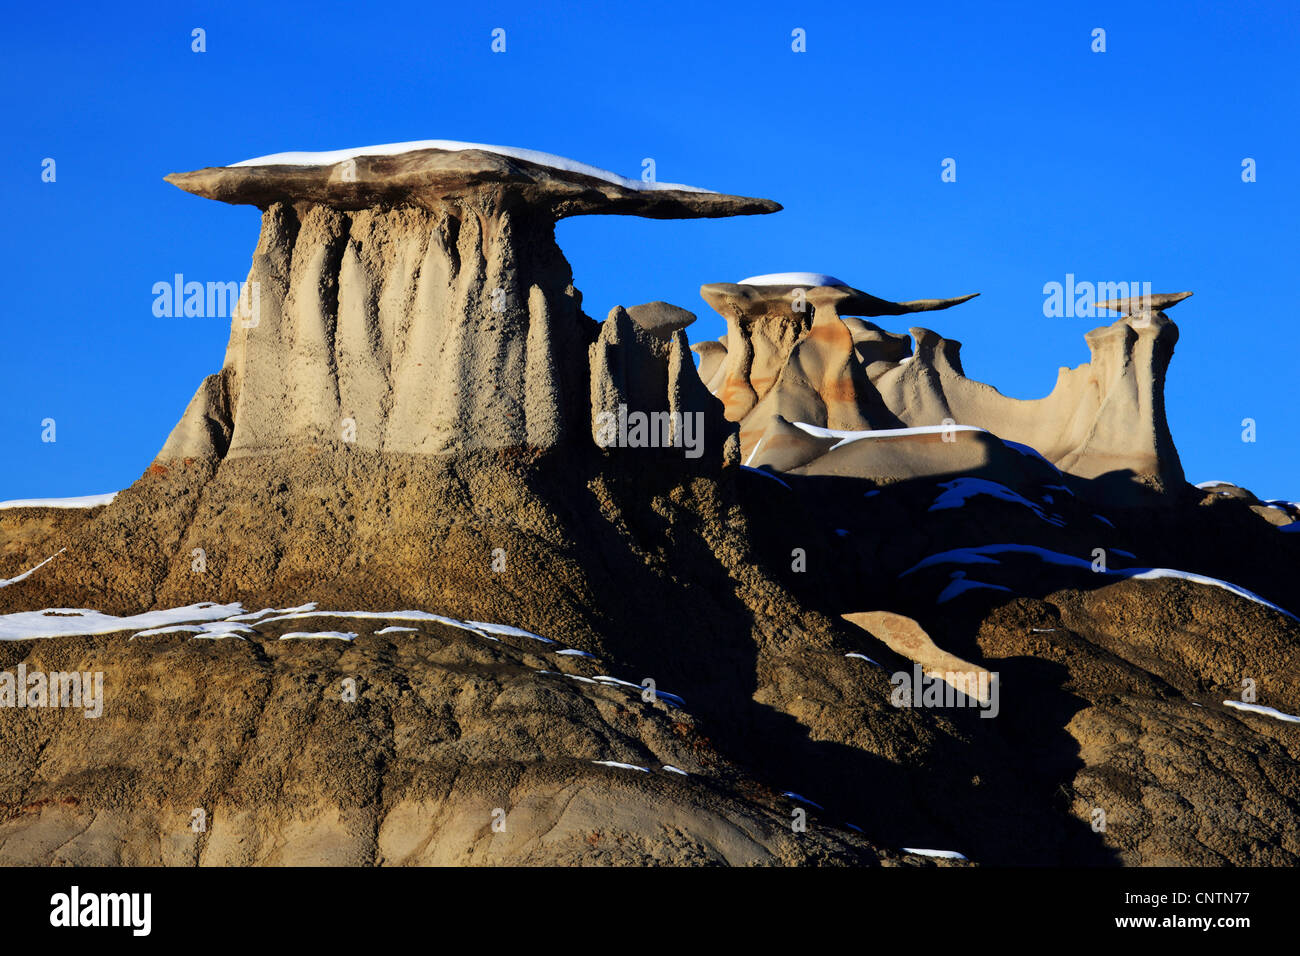 Bisti Badlands, monolito de piedra arenisca, ESTADOS UNIDOS, Nuevo México, Bisti desierto Foto de stock